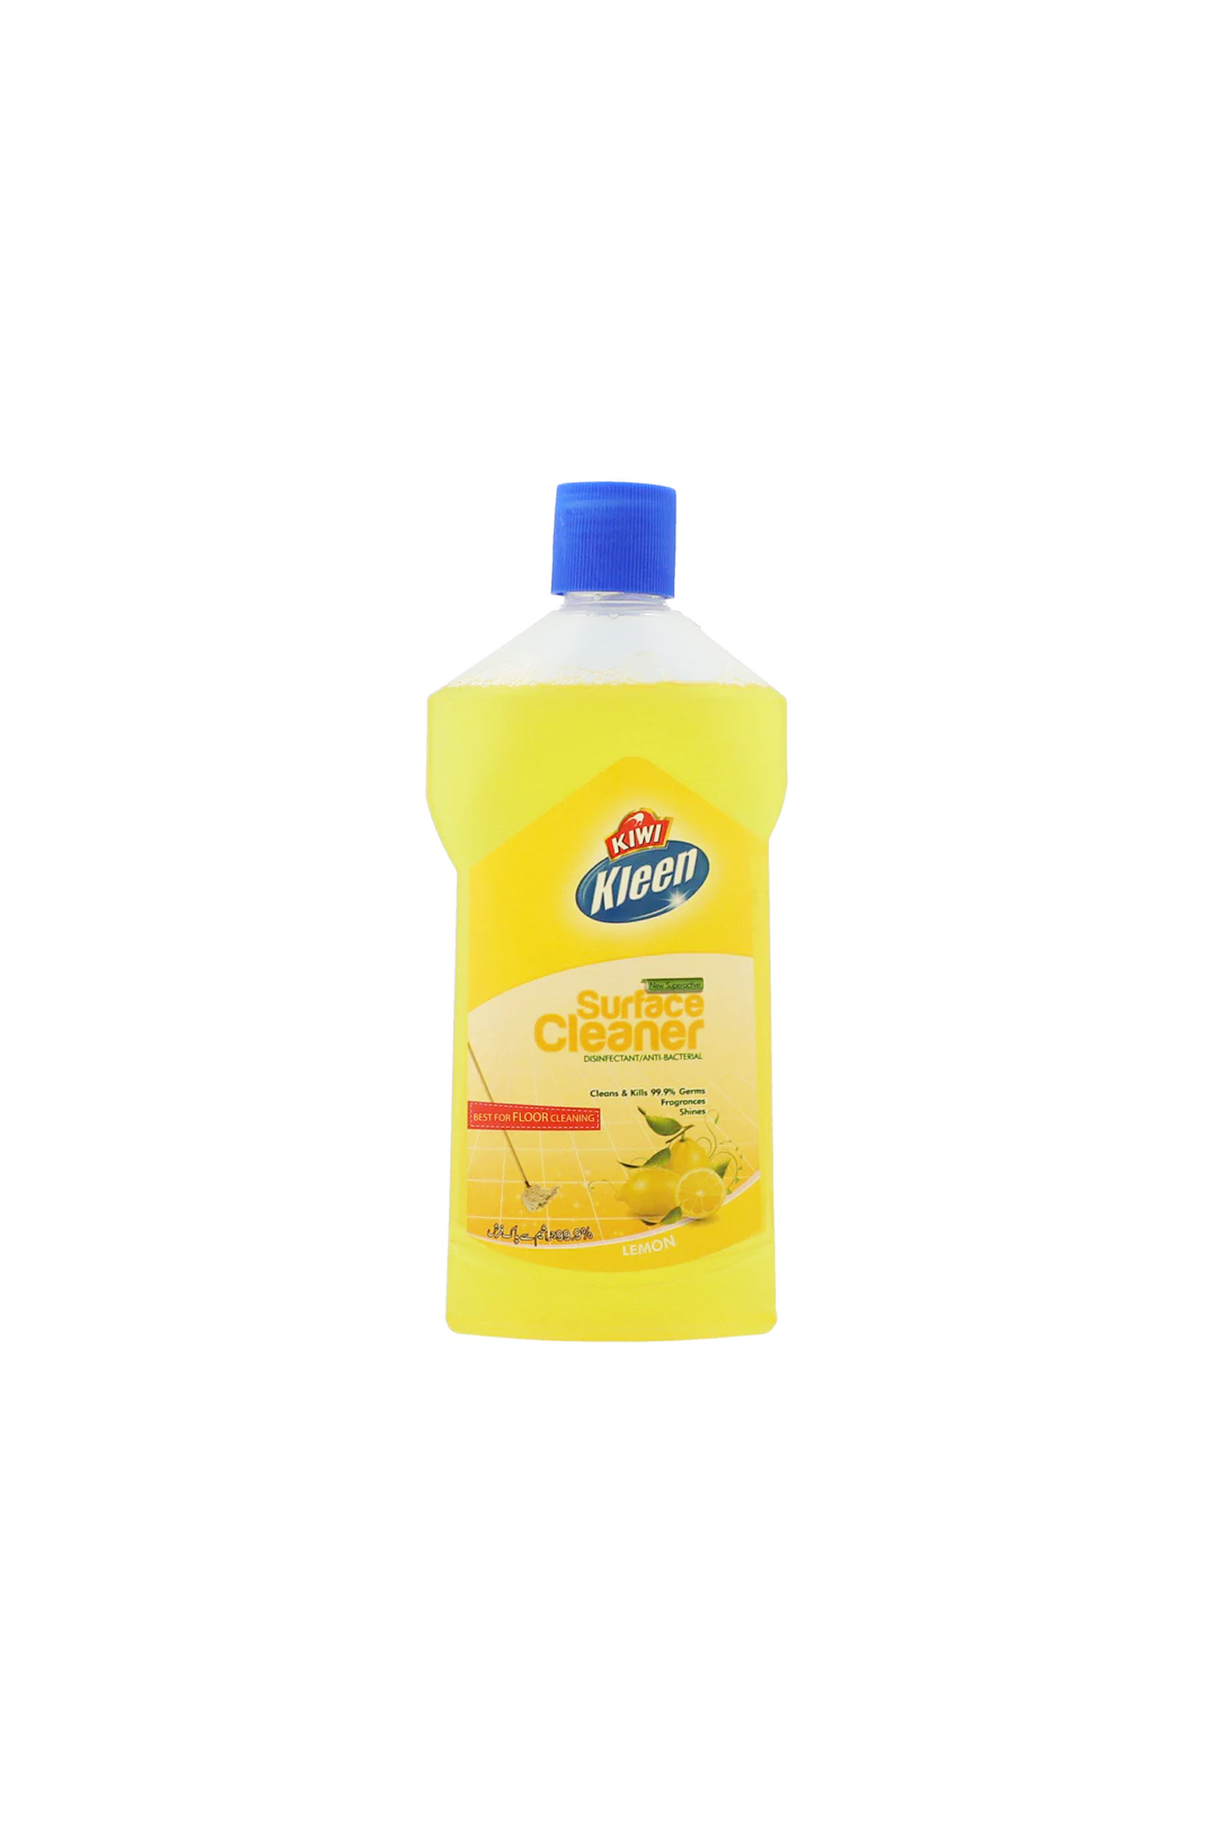 kiwi kleen surface cleaner lemon 500ml